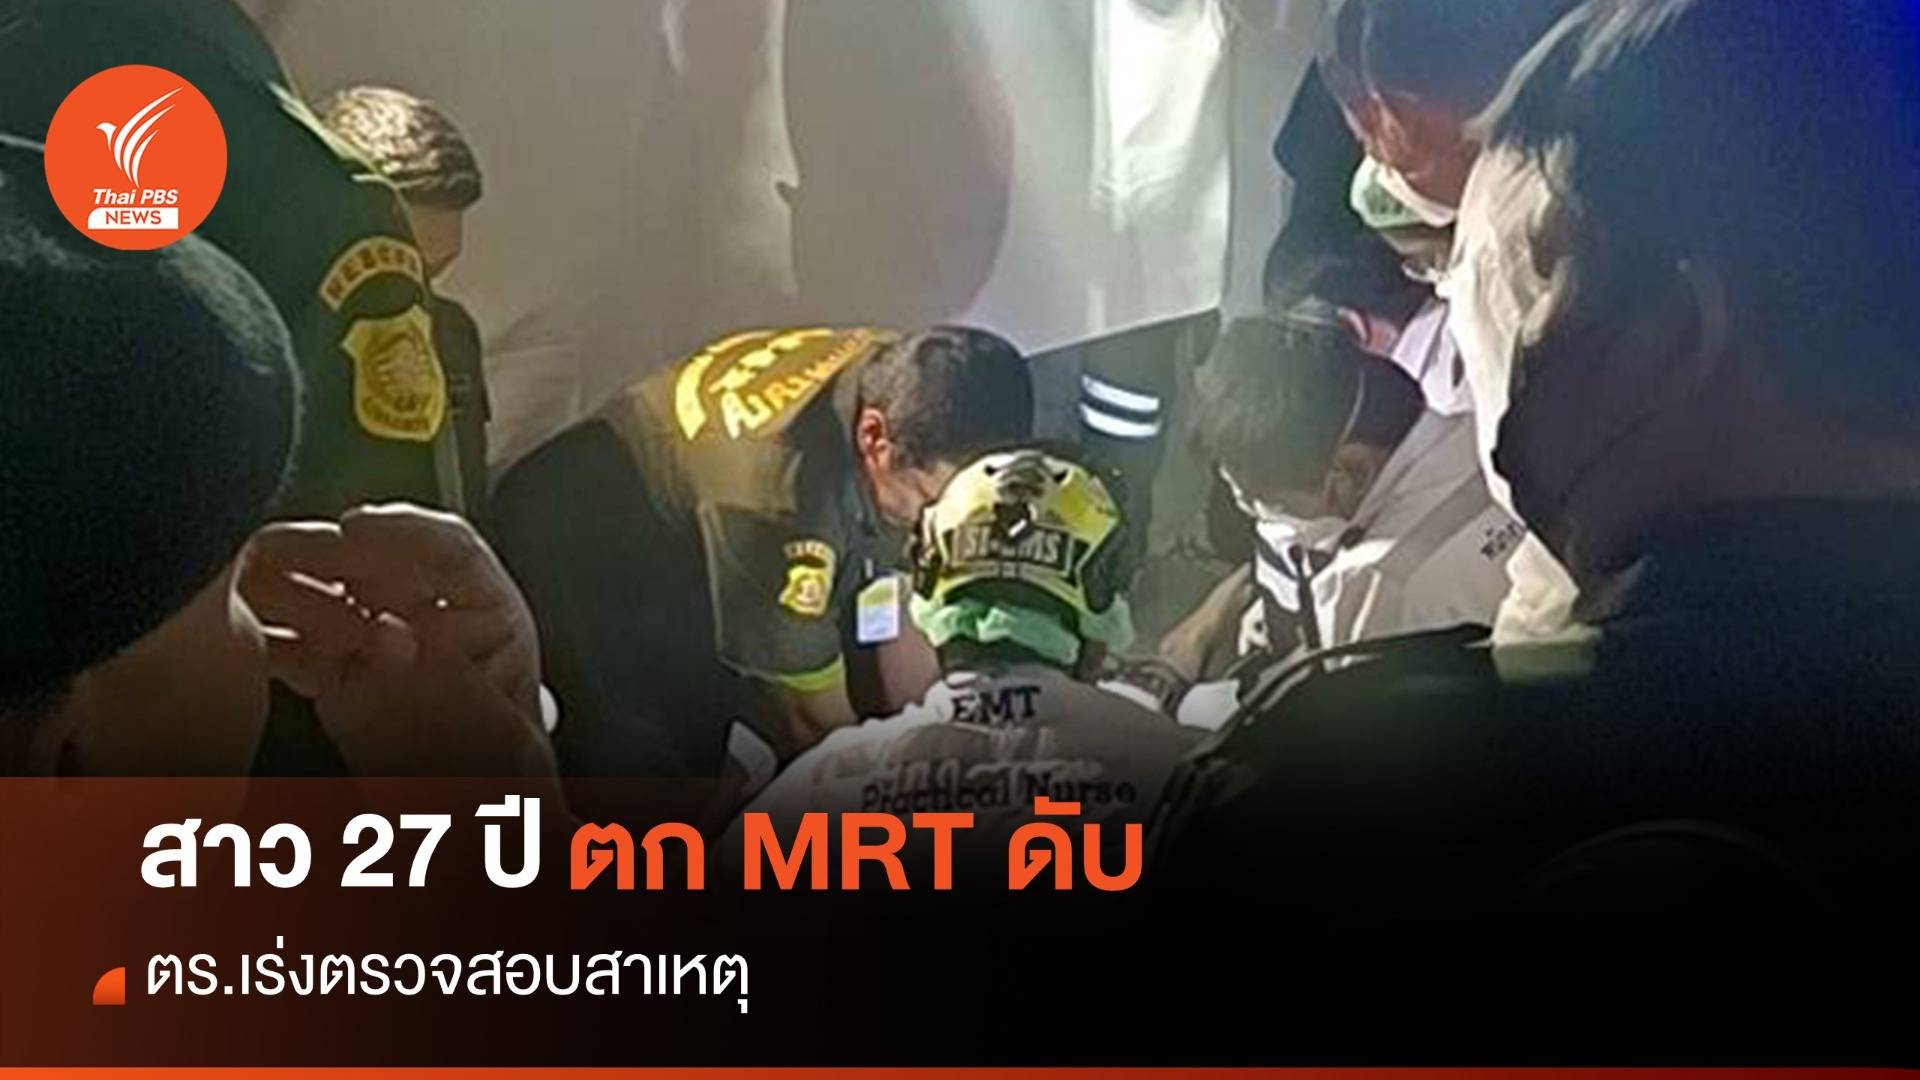 ตำรวจเร่งหาสาเหตุ สาว 27 ปี ตก MRT ท่าพระ เสียชีวิต 